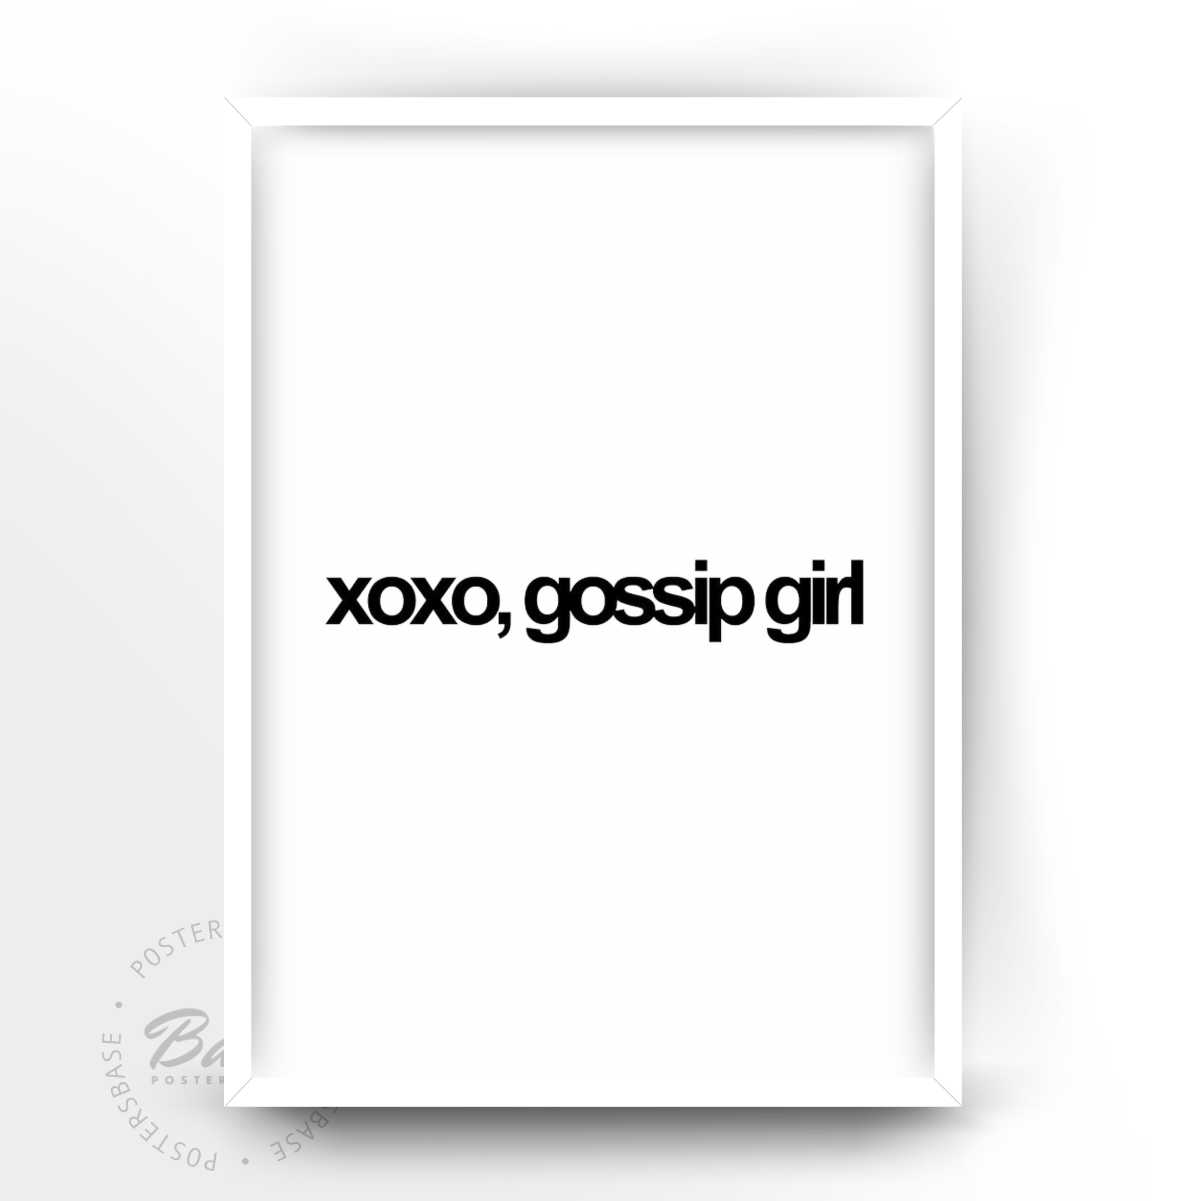 xoxo, gossip girls